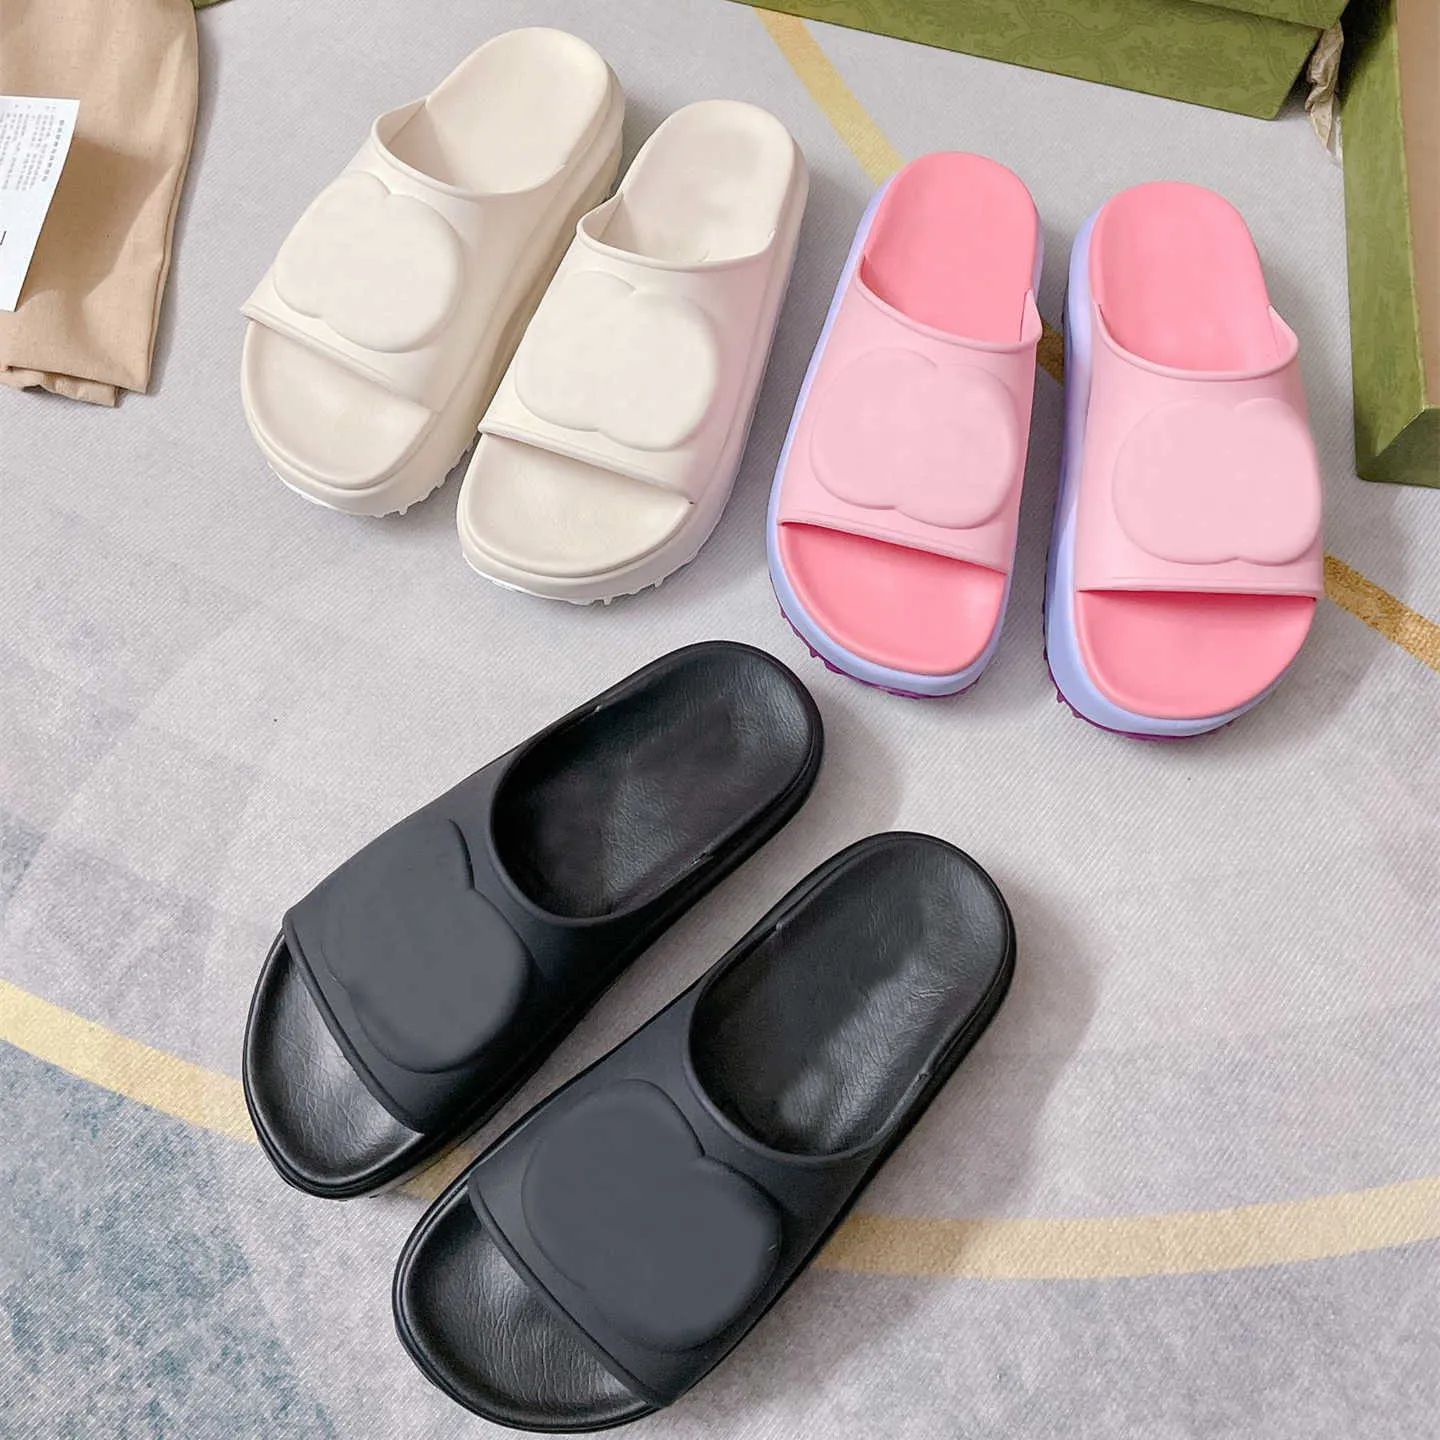 Dicke Unterseite Designer Hausschuhe Mode Weiche Gummi Keile Sandalen Für Frauen Mädchen Pantoufle Miami Sommer Strand Schuhe Plattform Rutschen